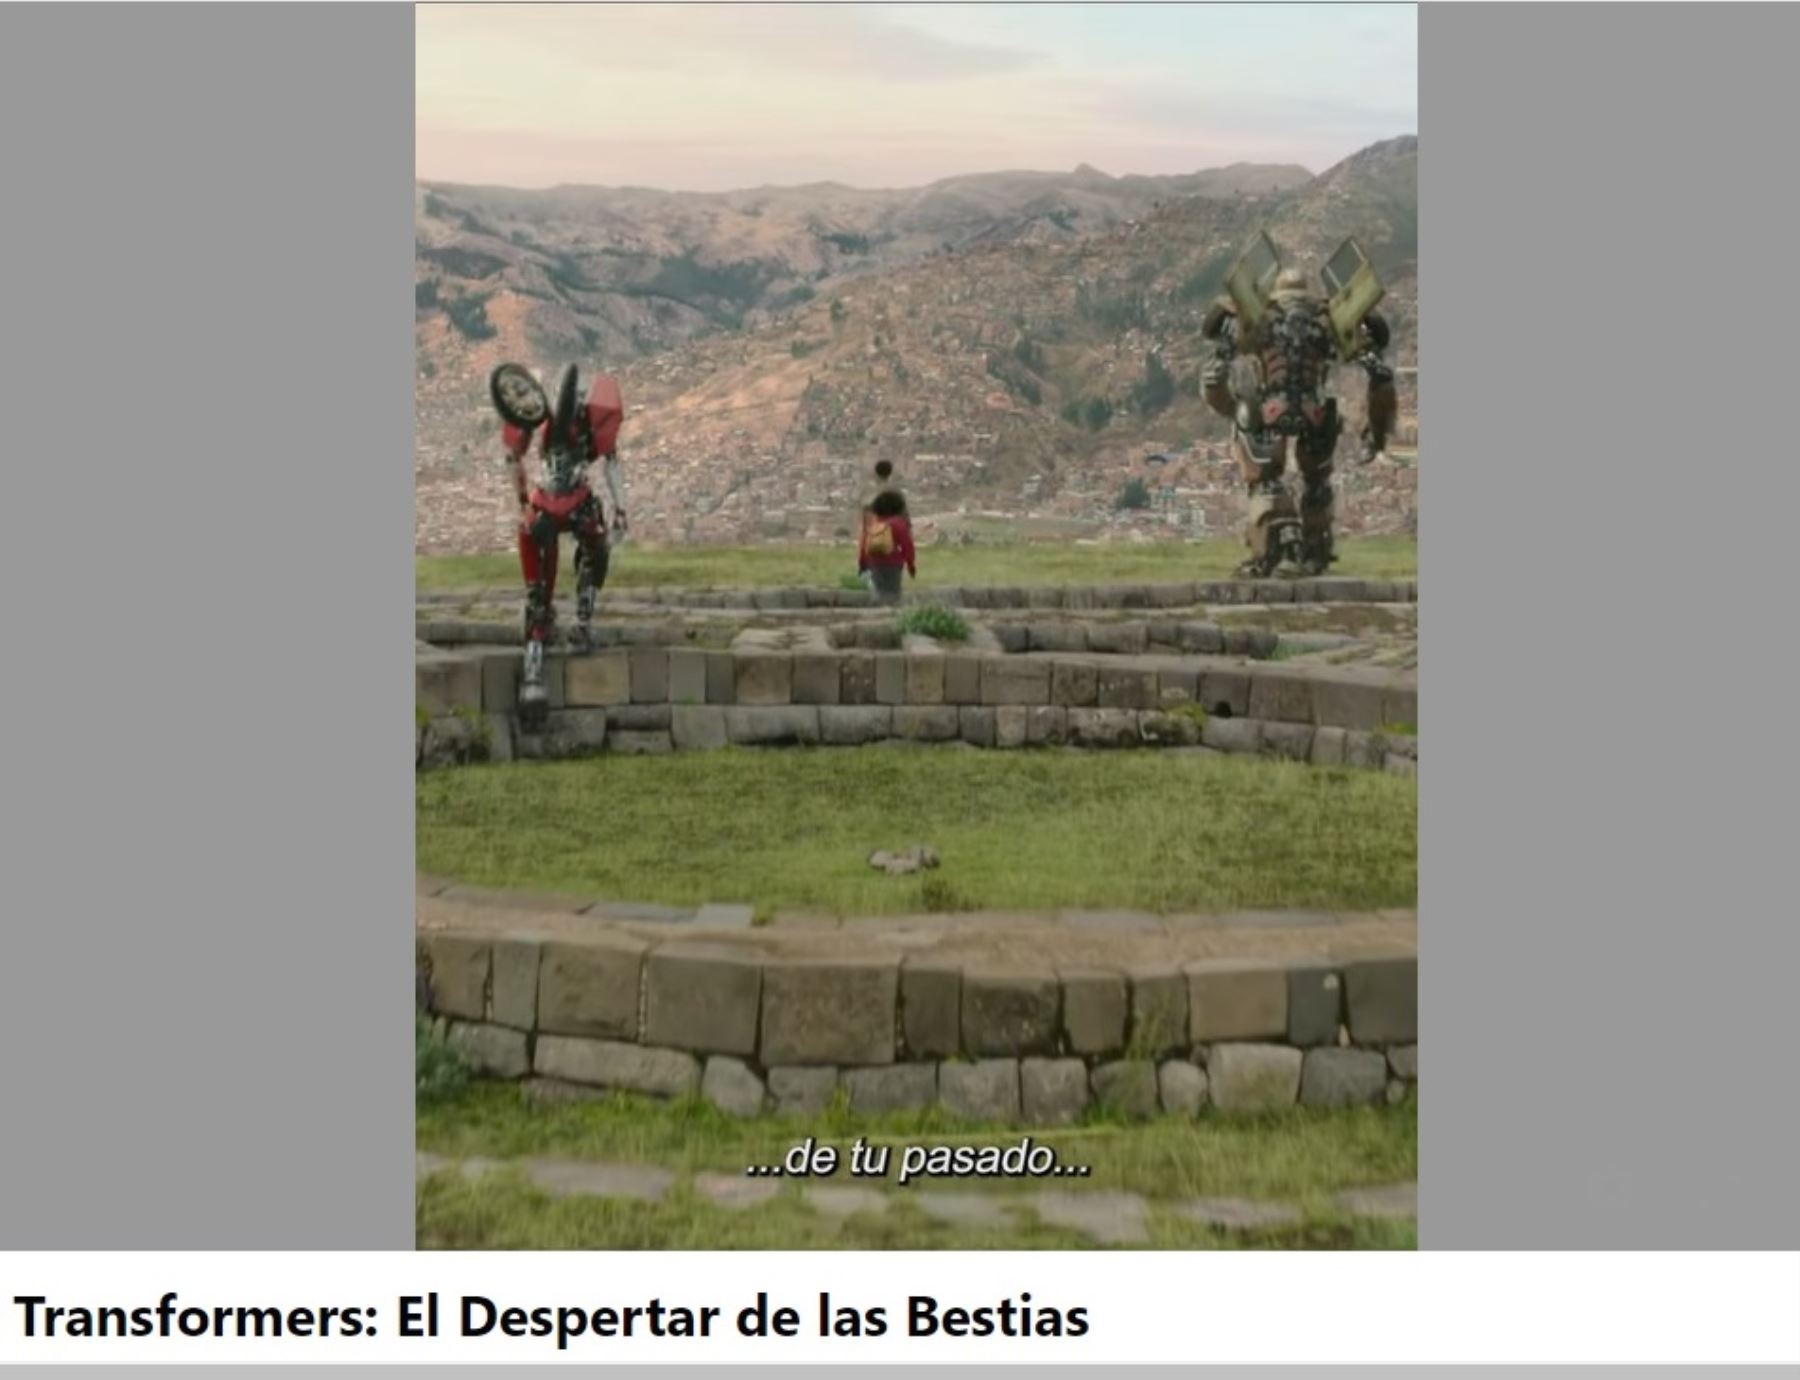 Estrenan tráiler oficial de película “Transformers: el despertar de las bestias” con algunas escenas grabadas en Cusco y la selva de San Martín.